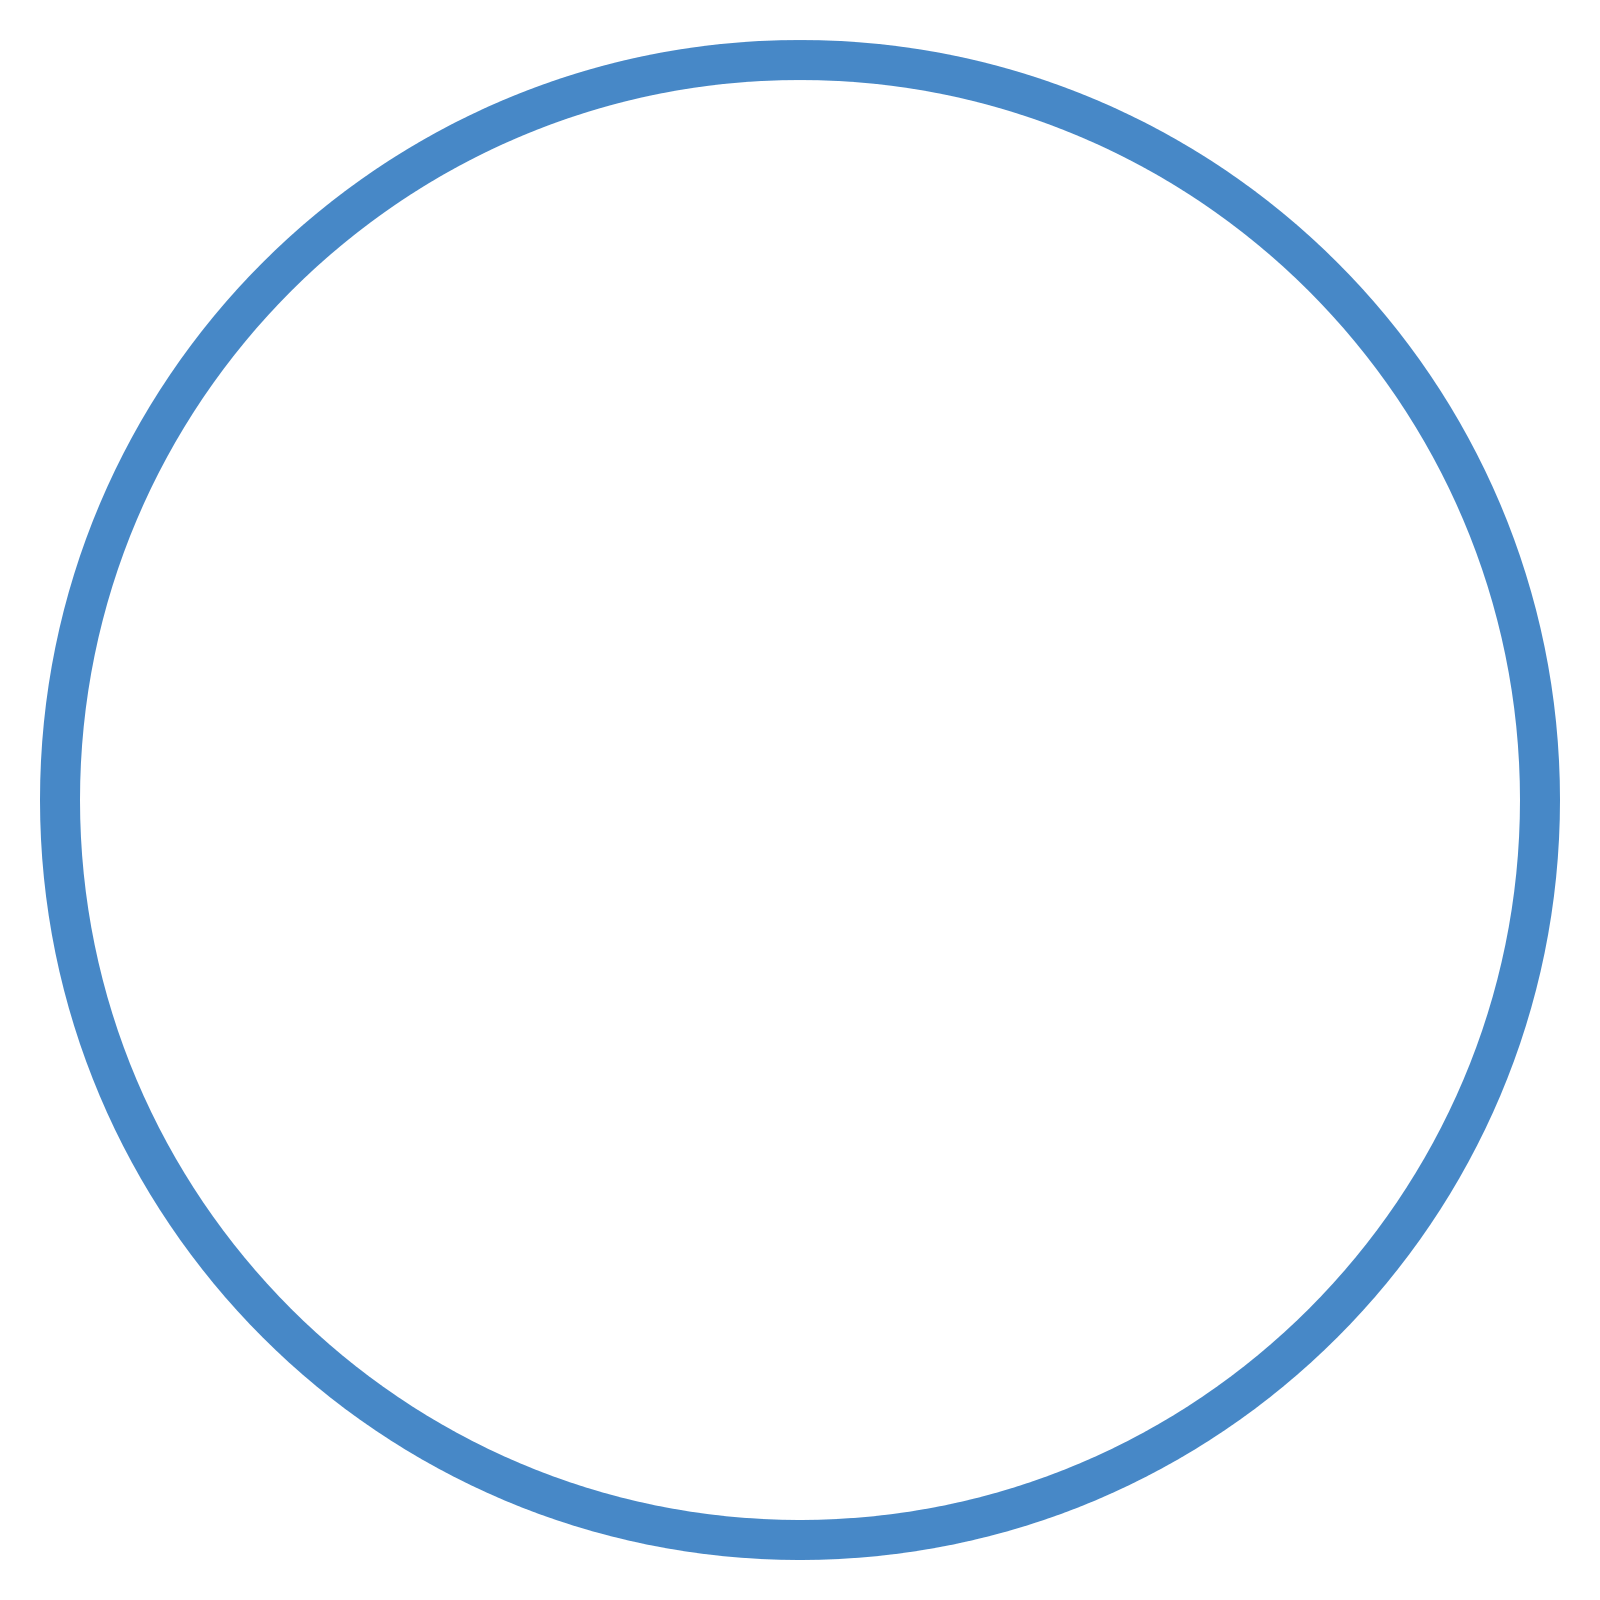 White circle icon